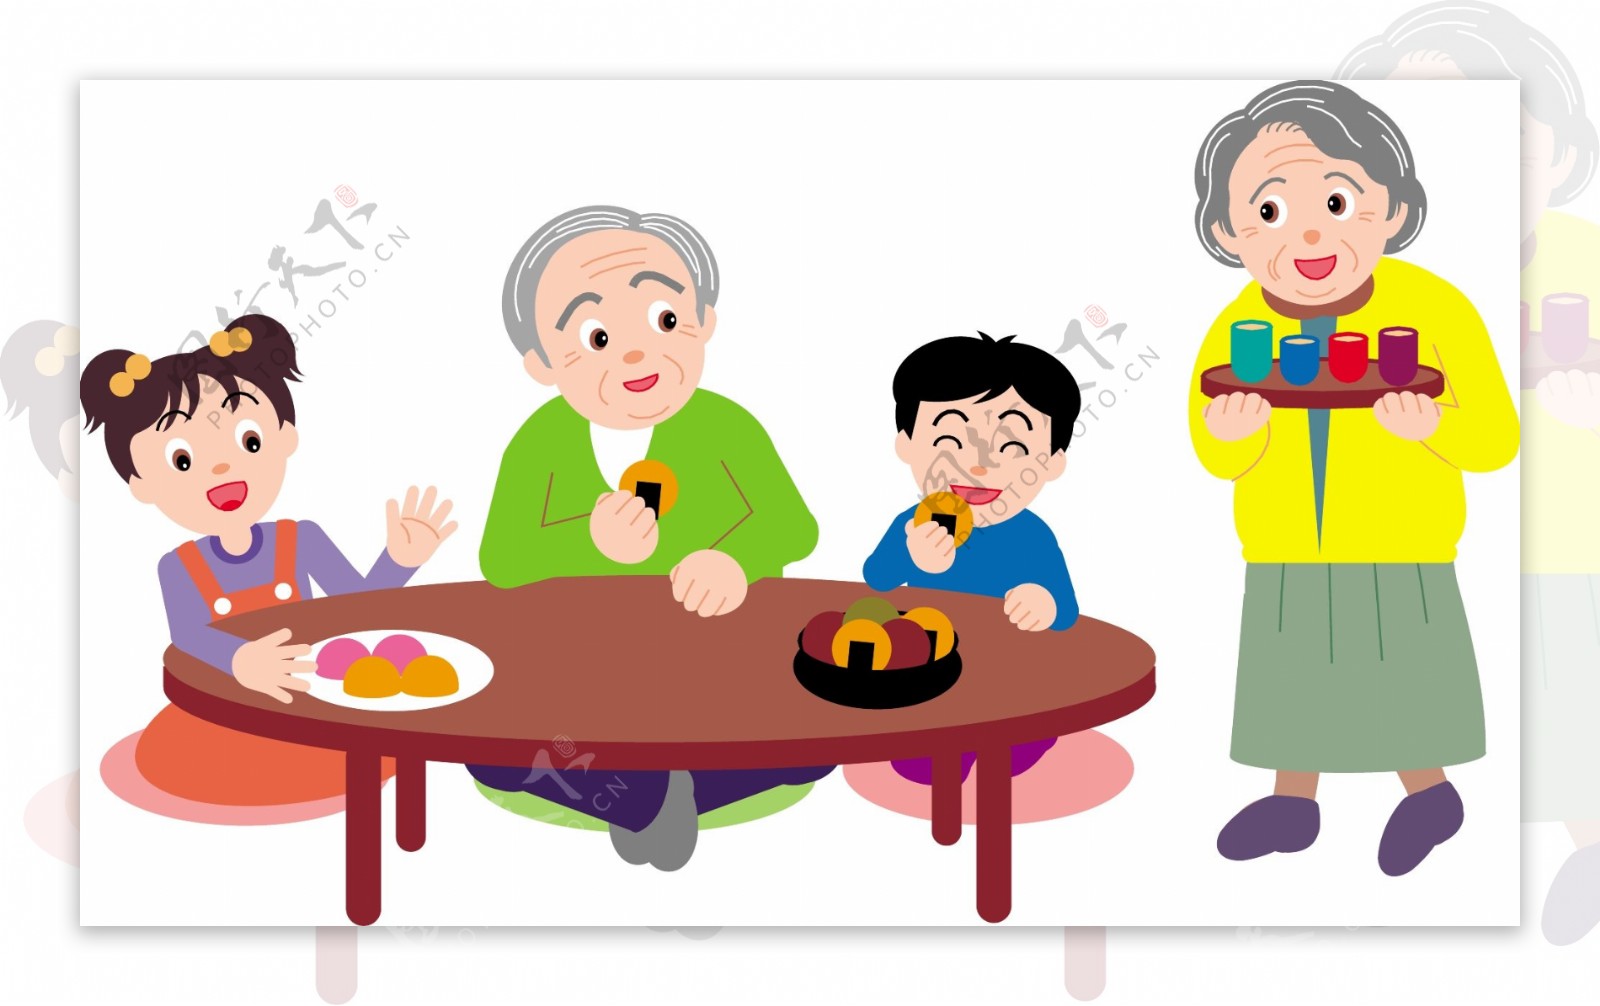 老年人与小孩吃饭矢量素材